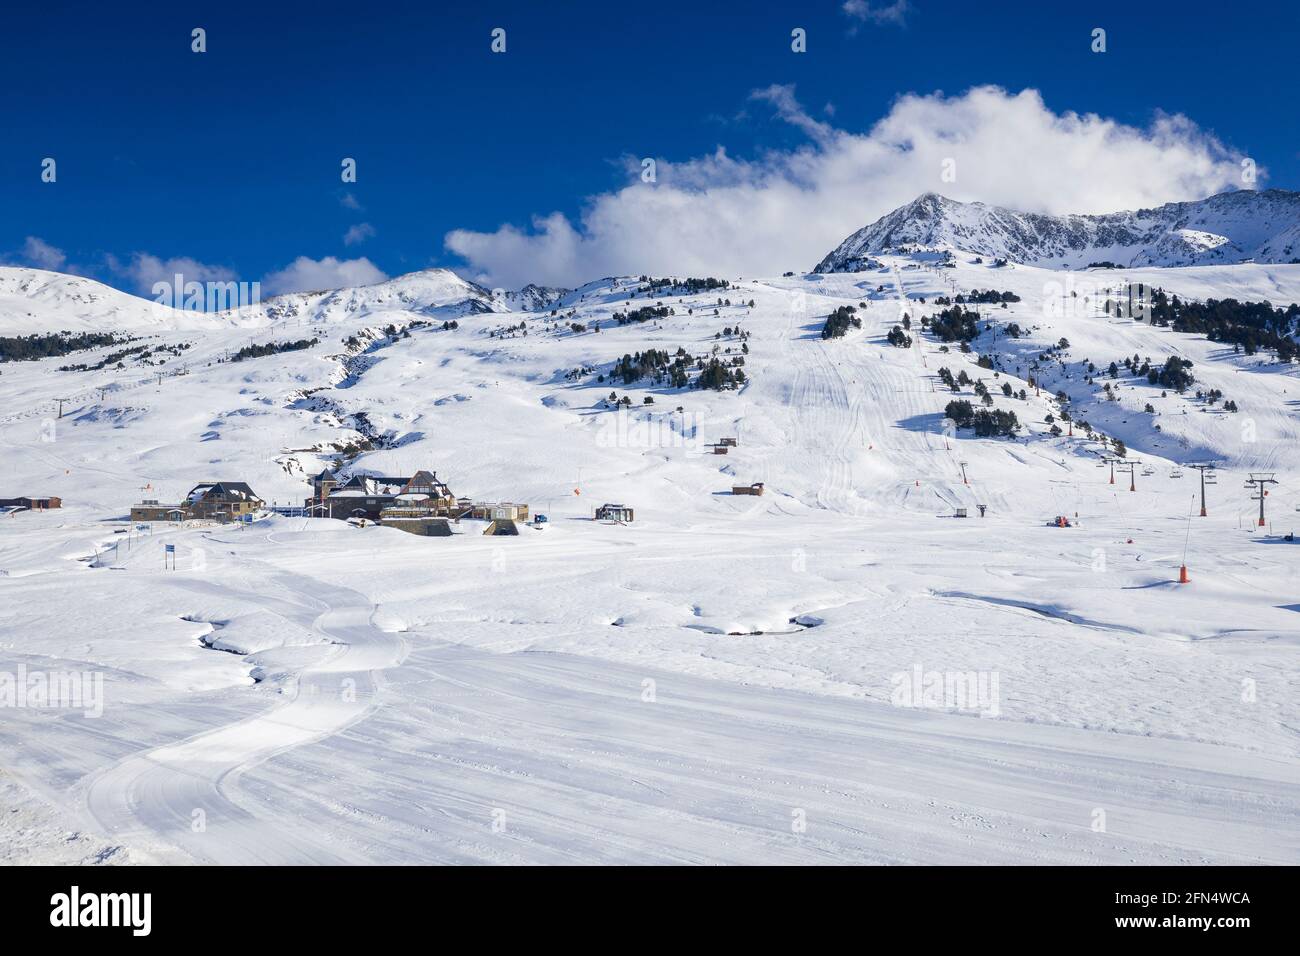 Aerial view of the snowy Plan de Beret in winter. (Aran Valley, Catalonia, Spain, Pyrenees) ESP: Vista aérea del Plan de Beret nevado en invierno Stock Photo